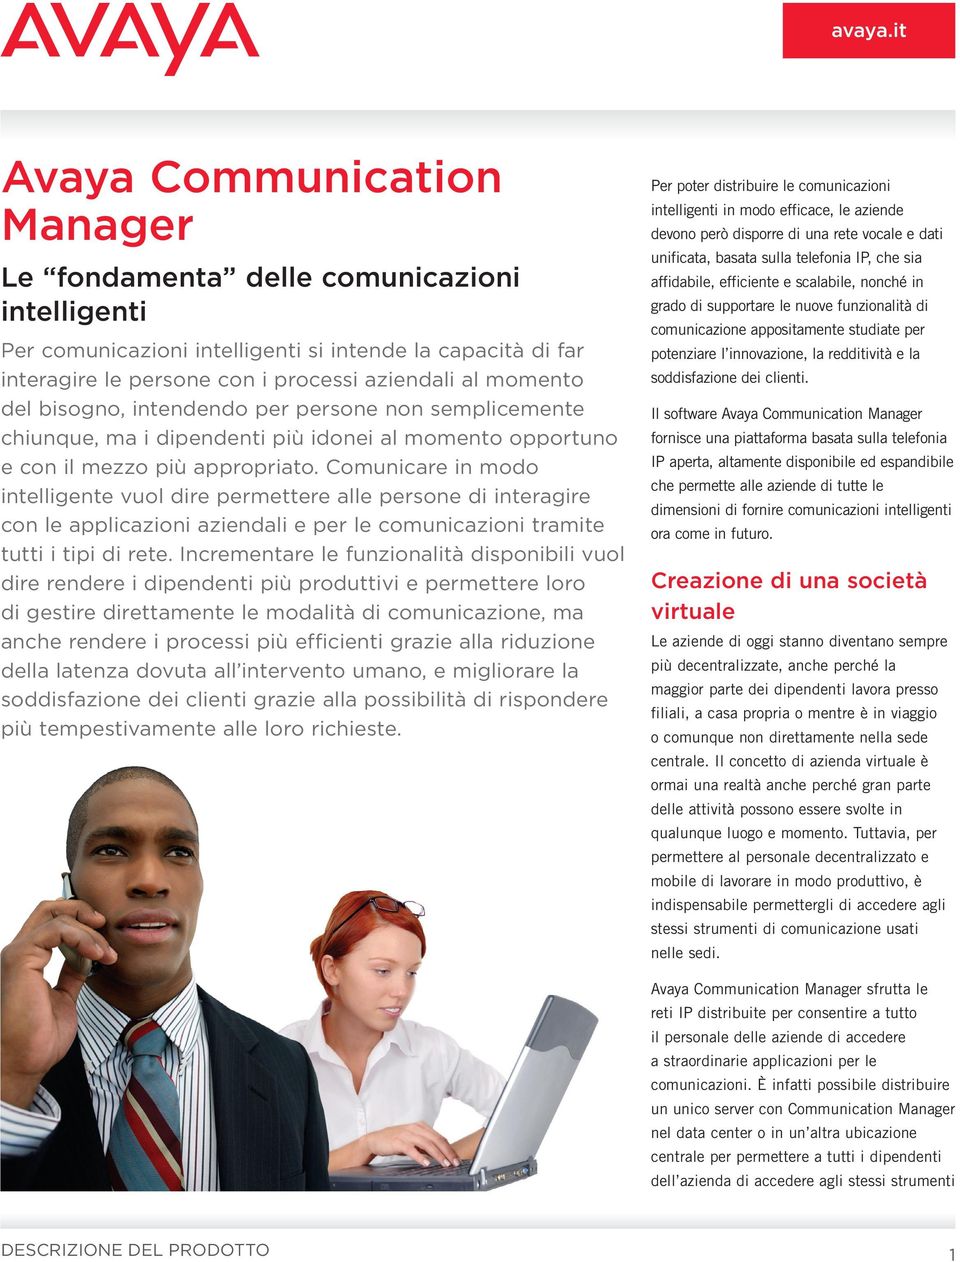 Comunicare in modo intelligente vuol dire permettere alle persone di interagire con le applicazioni aziendali e per le comunicazioni tramite tutti i tipi di rete.